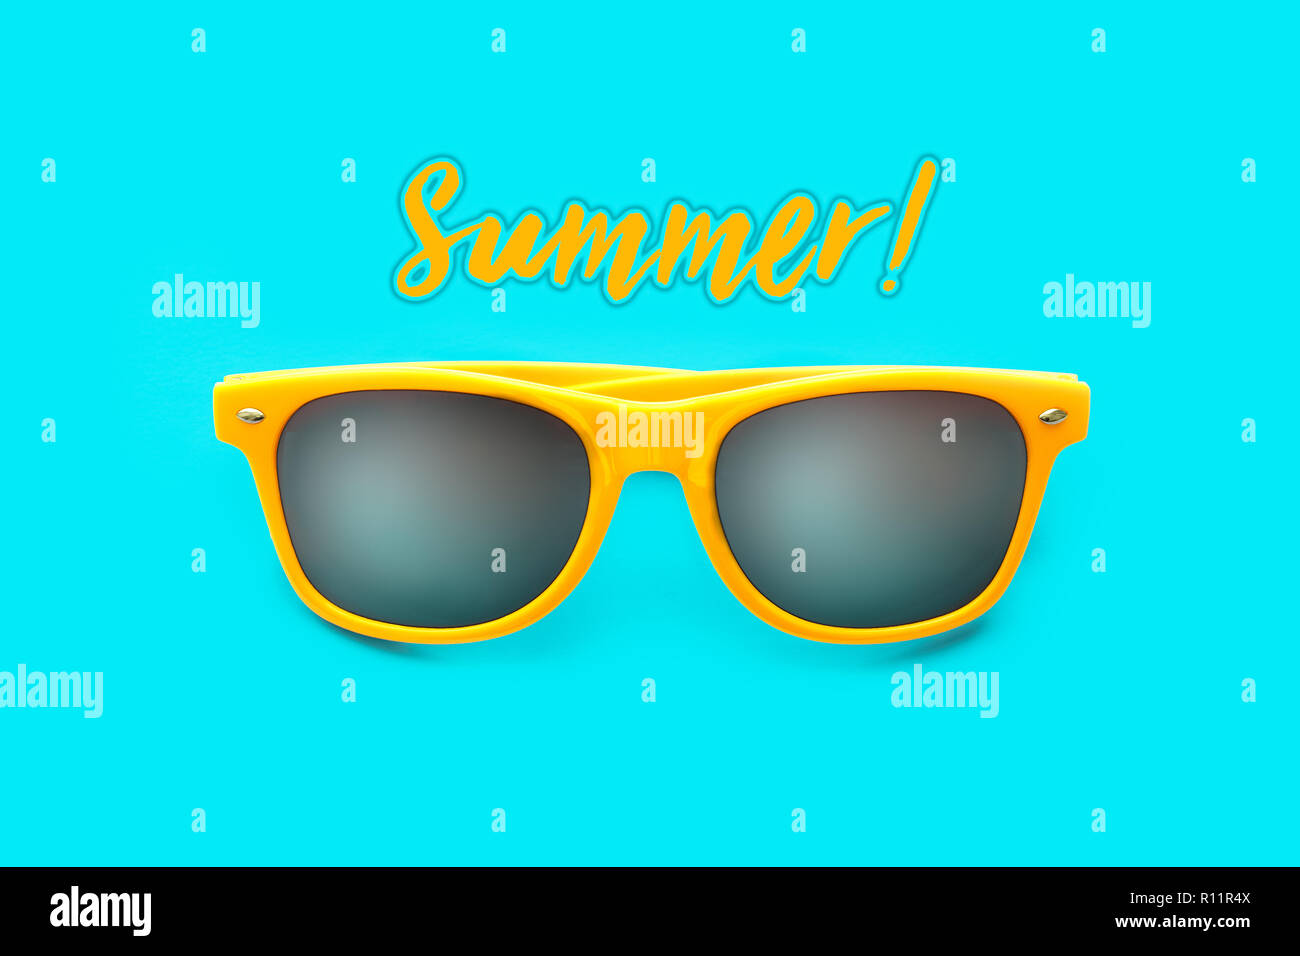 L'estate! Testo e occhiali da sole giallo in intenso blu ciano sfondo. La minima nozione di immagine per pronto per l'estate, protezione solare, giorni caldi e tropical Foto Stock